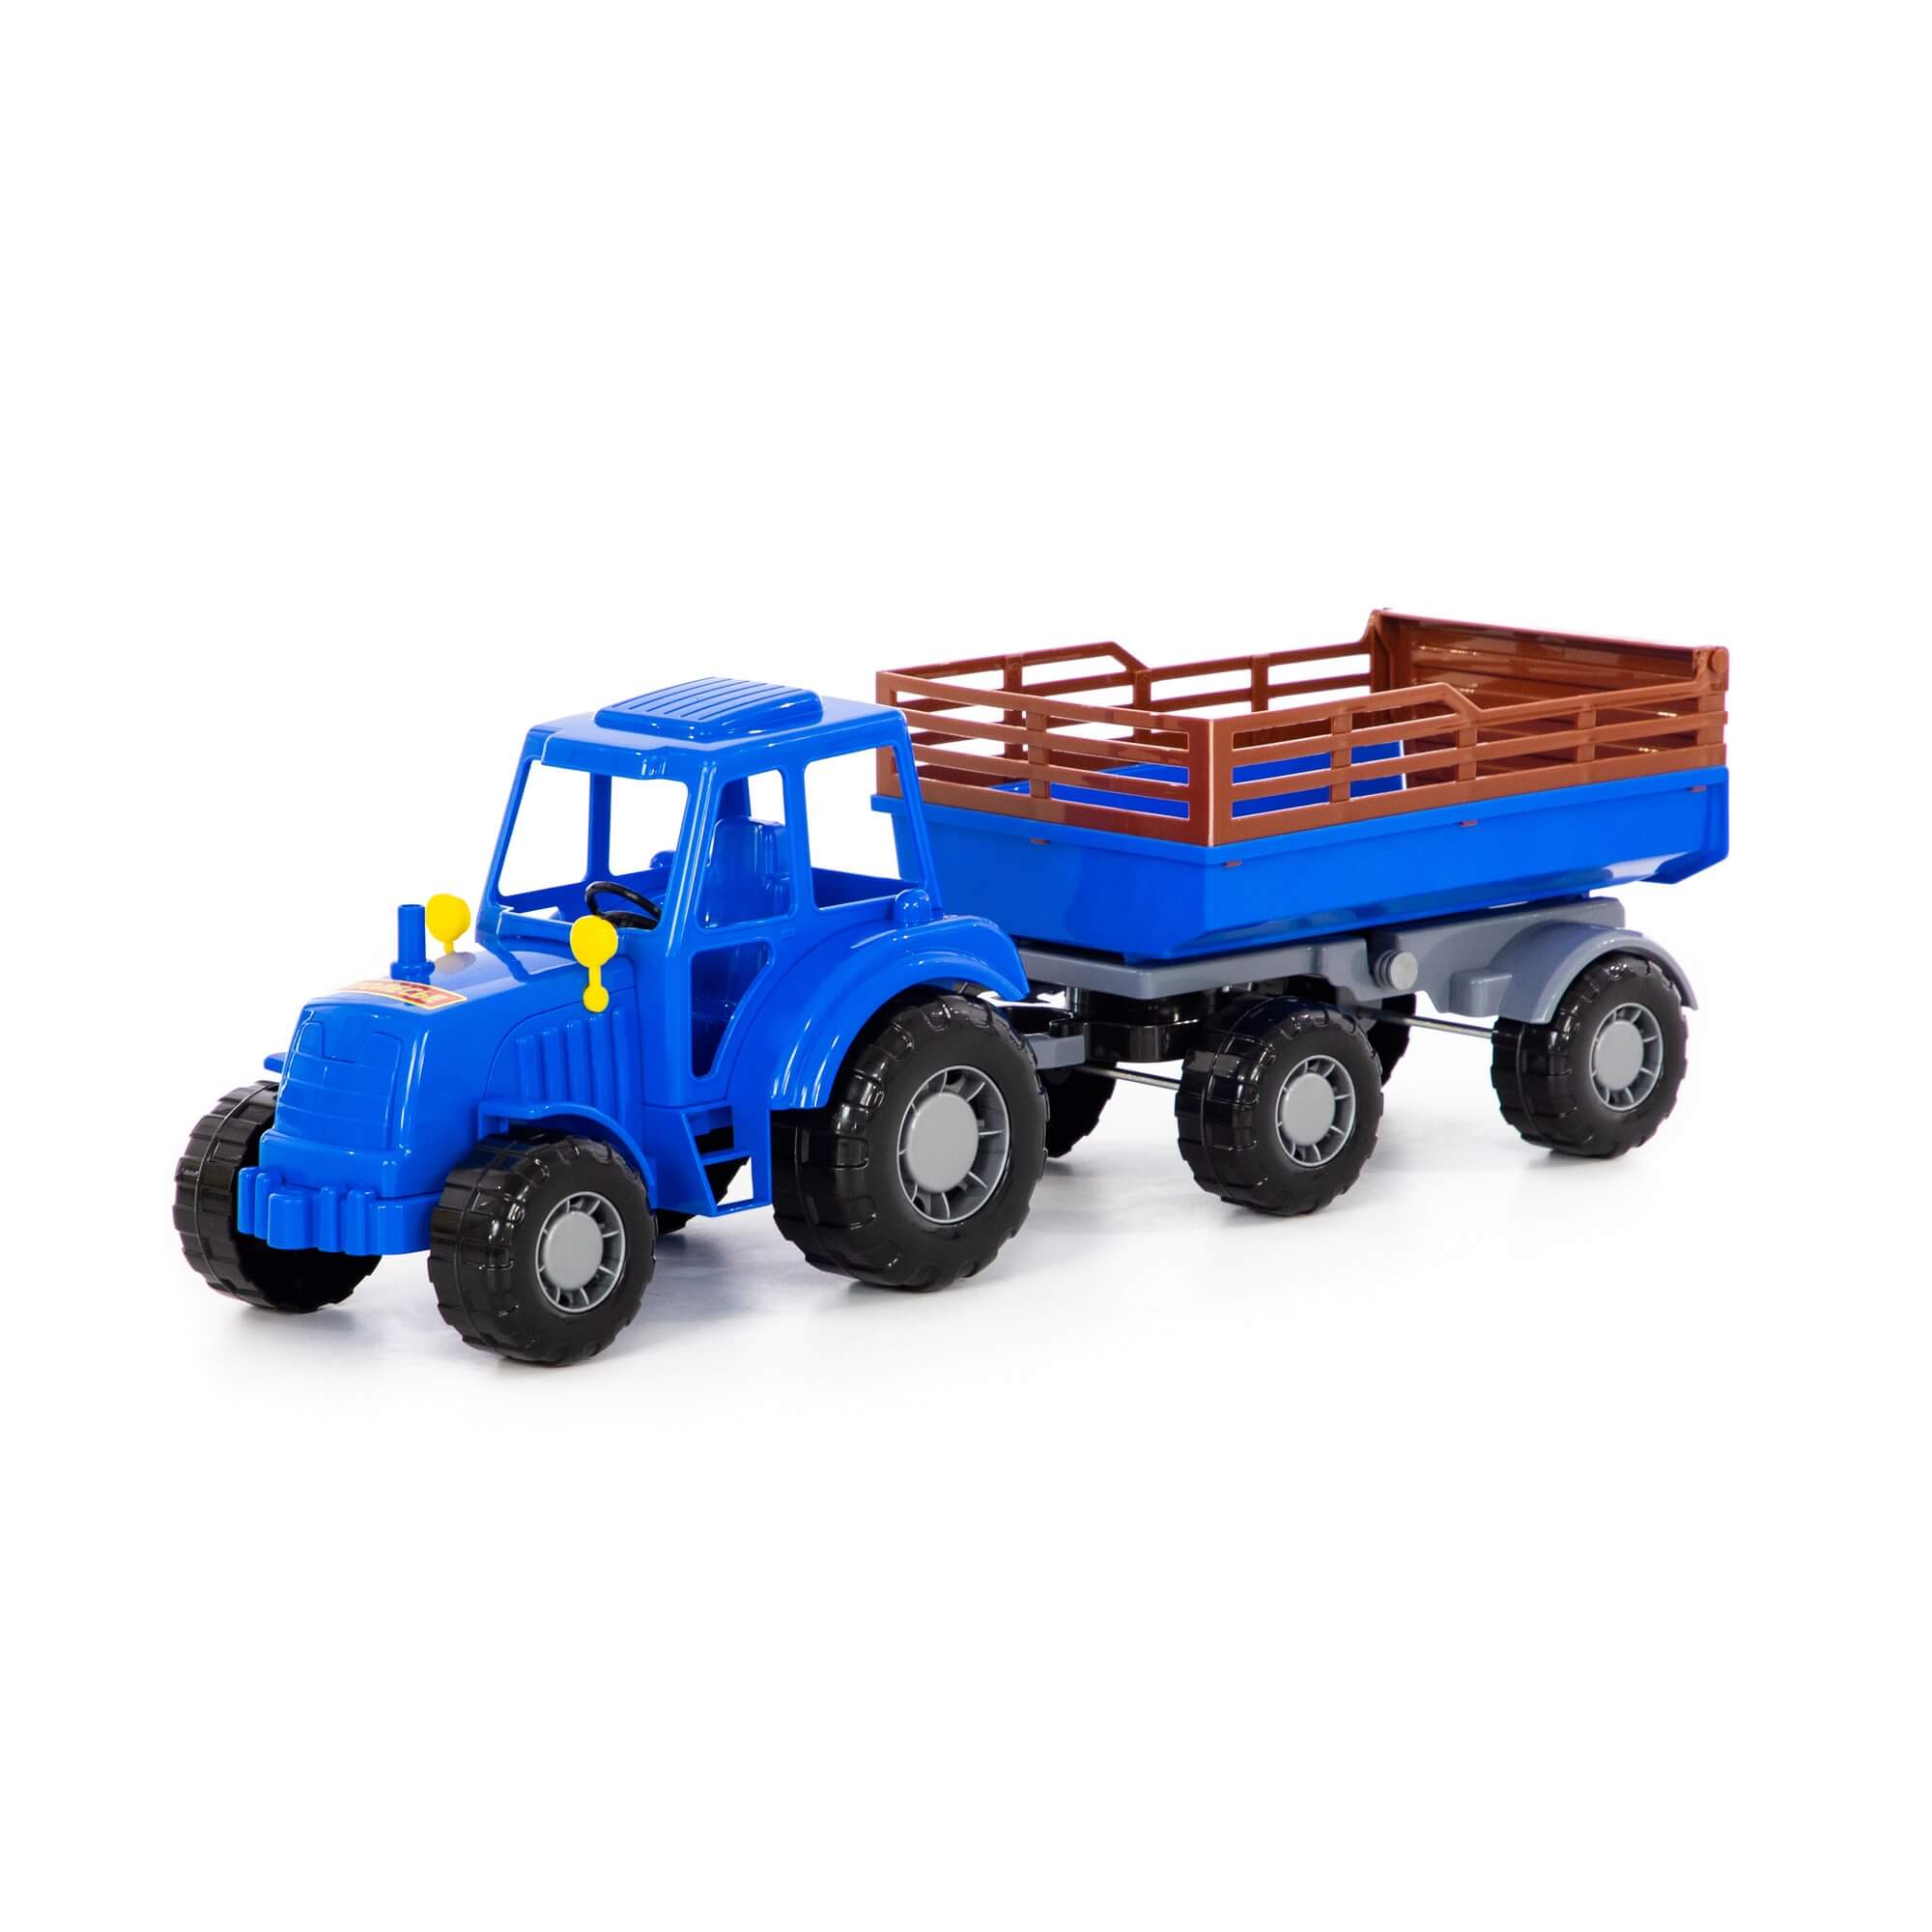 Трактор Алтай с прицепом №2 (синий) Полесье трактор алтай с прицепом 2 синий полесье